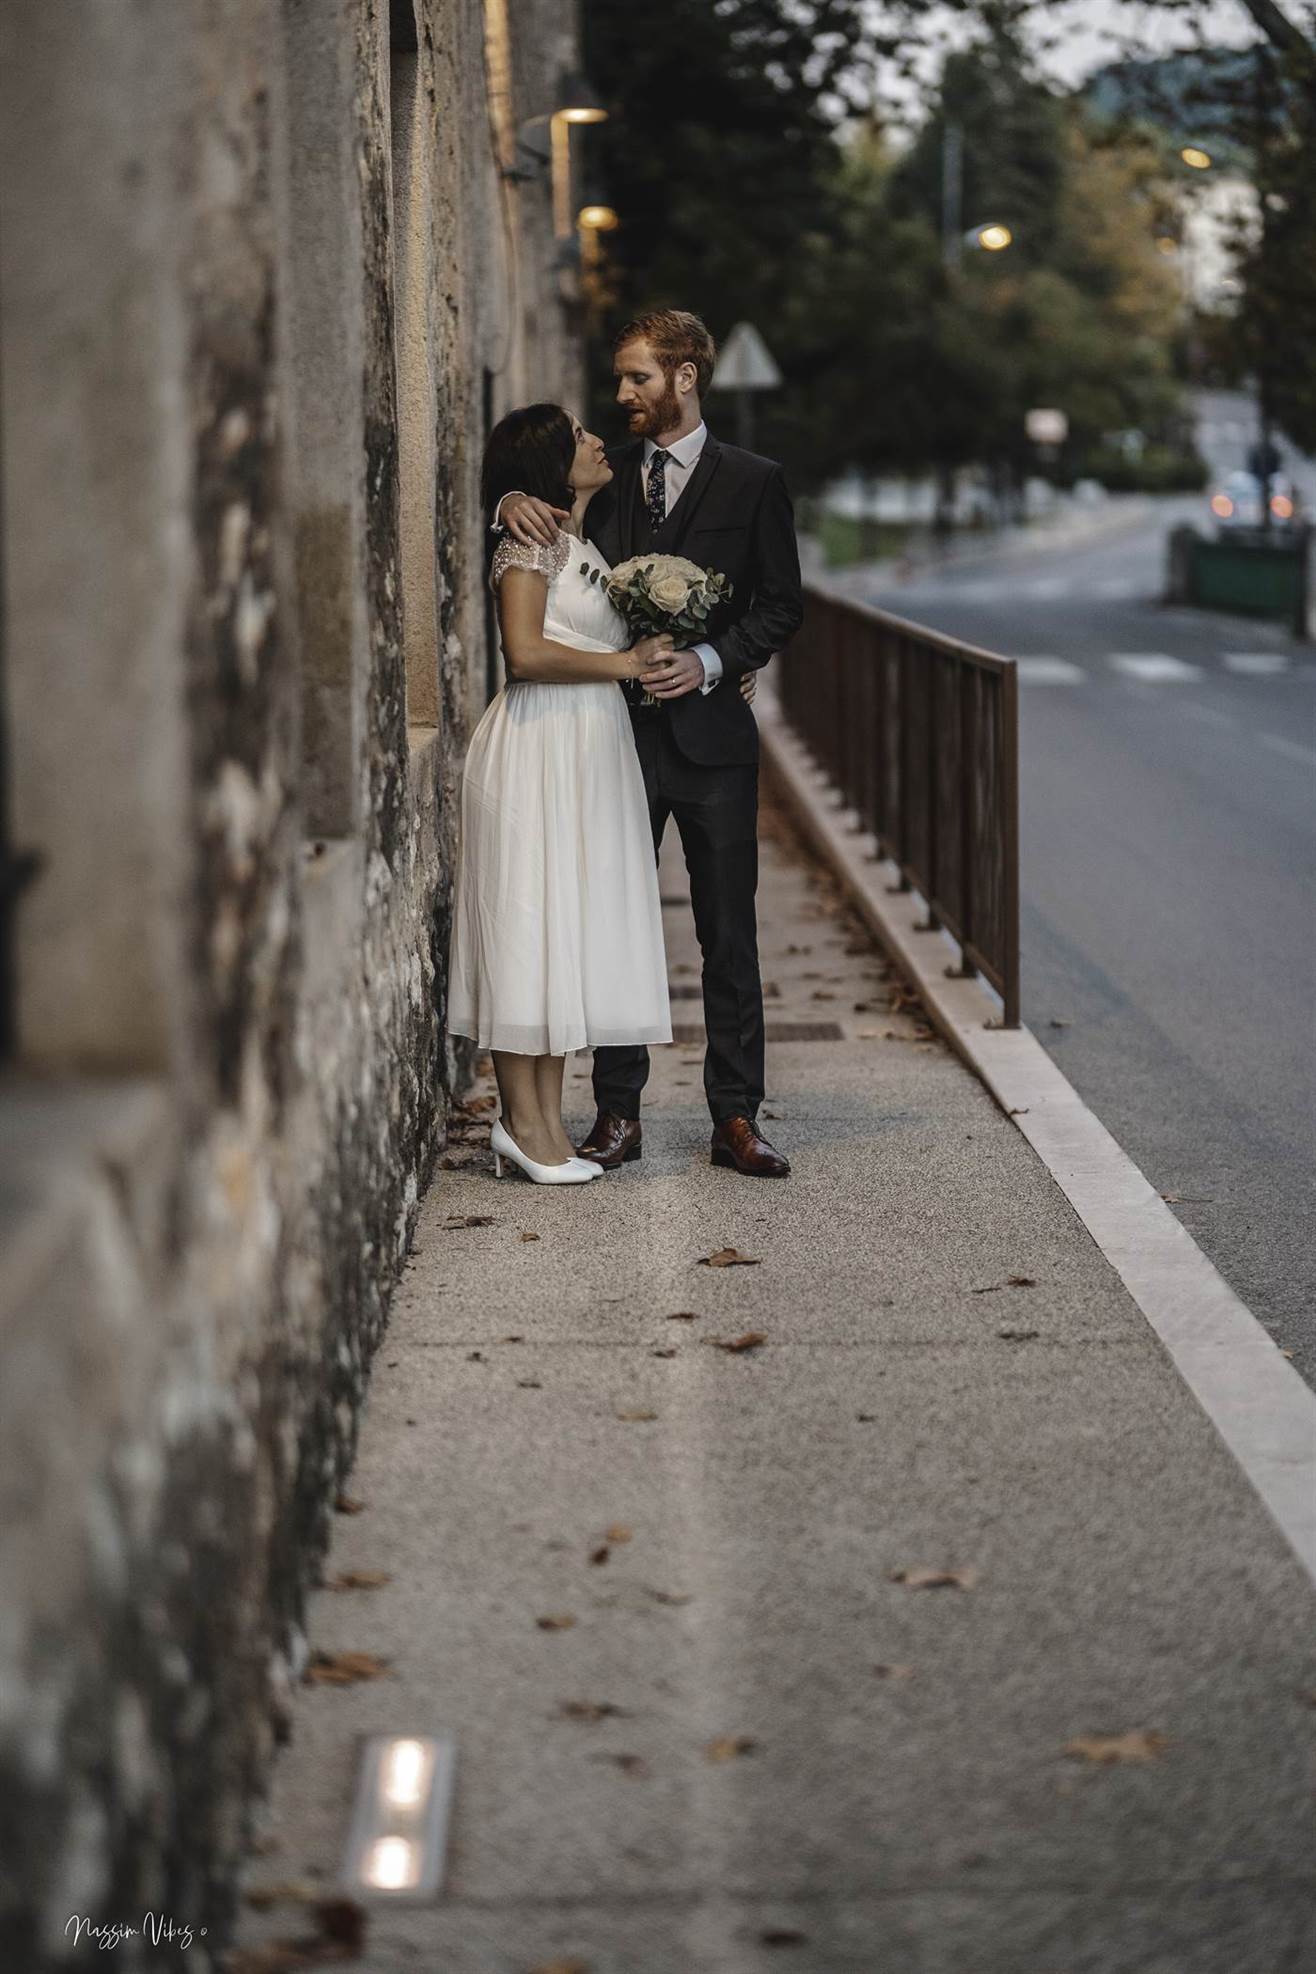 Immortalisez votre amour à Aix-en-Provence avec Nassim, le photographe de mariage passionné 101